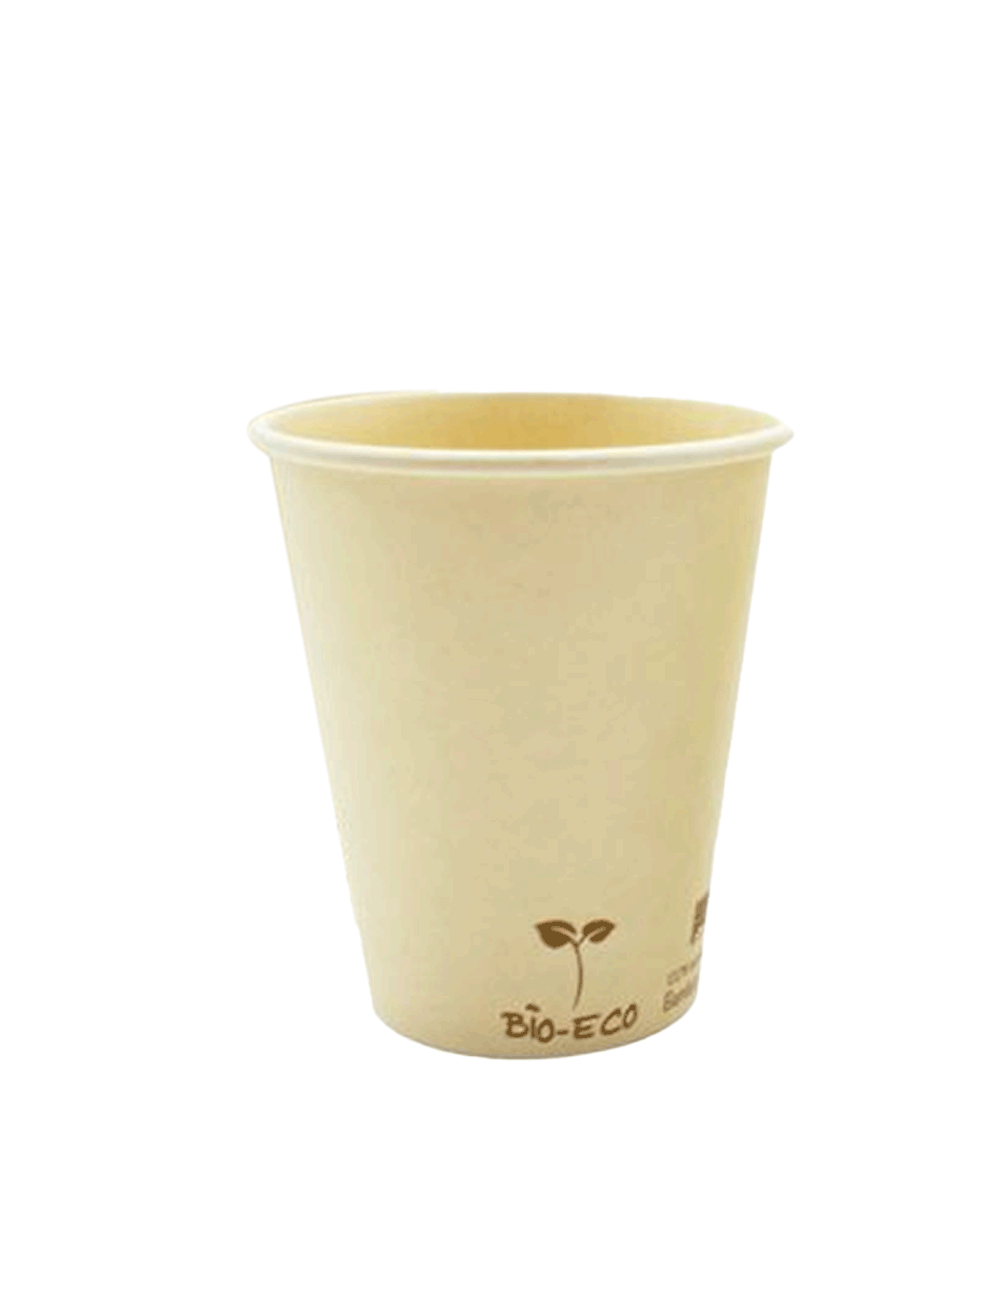 compostabile Bicchiere per Espresso Bianco con Stampa Icone 1000 Pezzi 100 ml 4 oz BIOZOYG Bicchiere di Carta per Bevande Calde I Tazza per caffè Espresso monouso per vasellame biodegradabile 